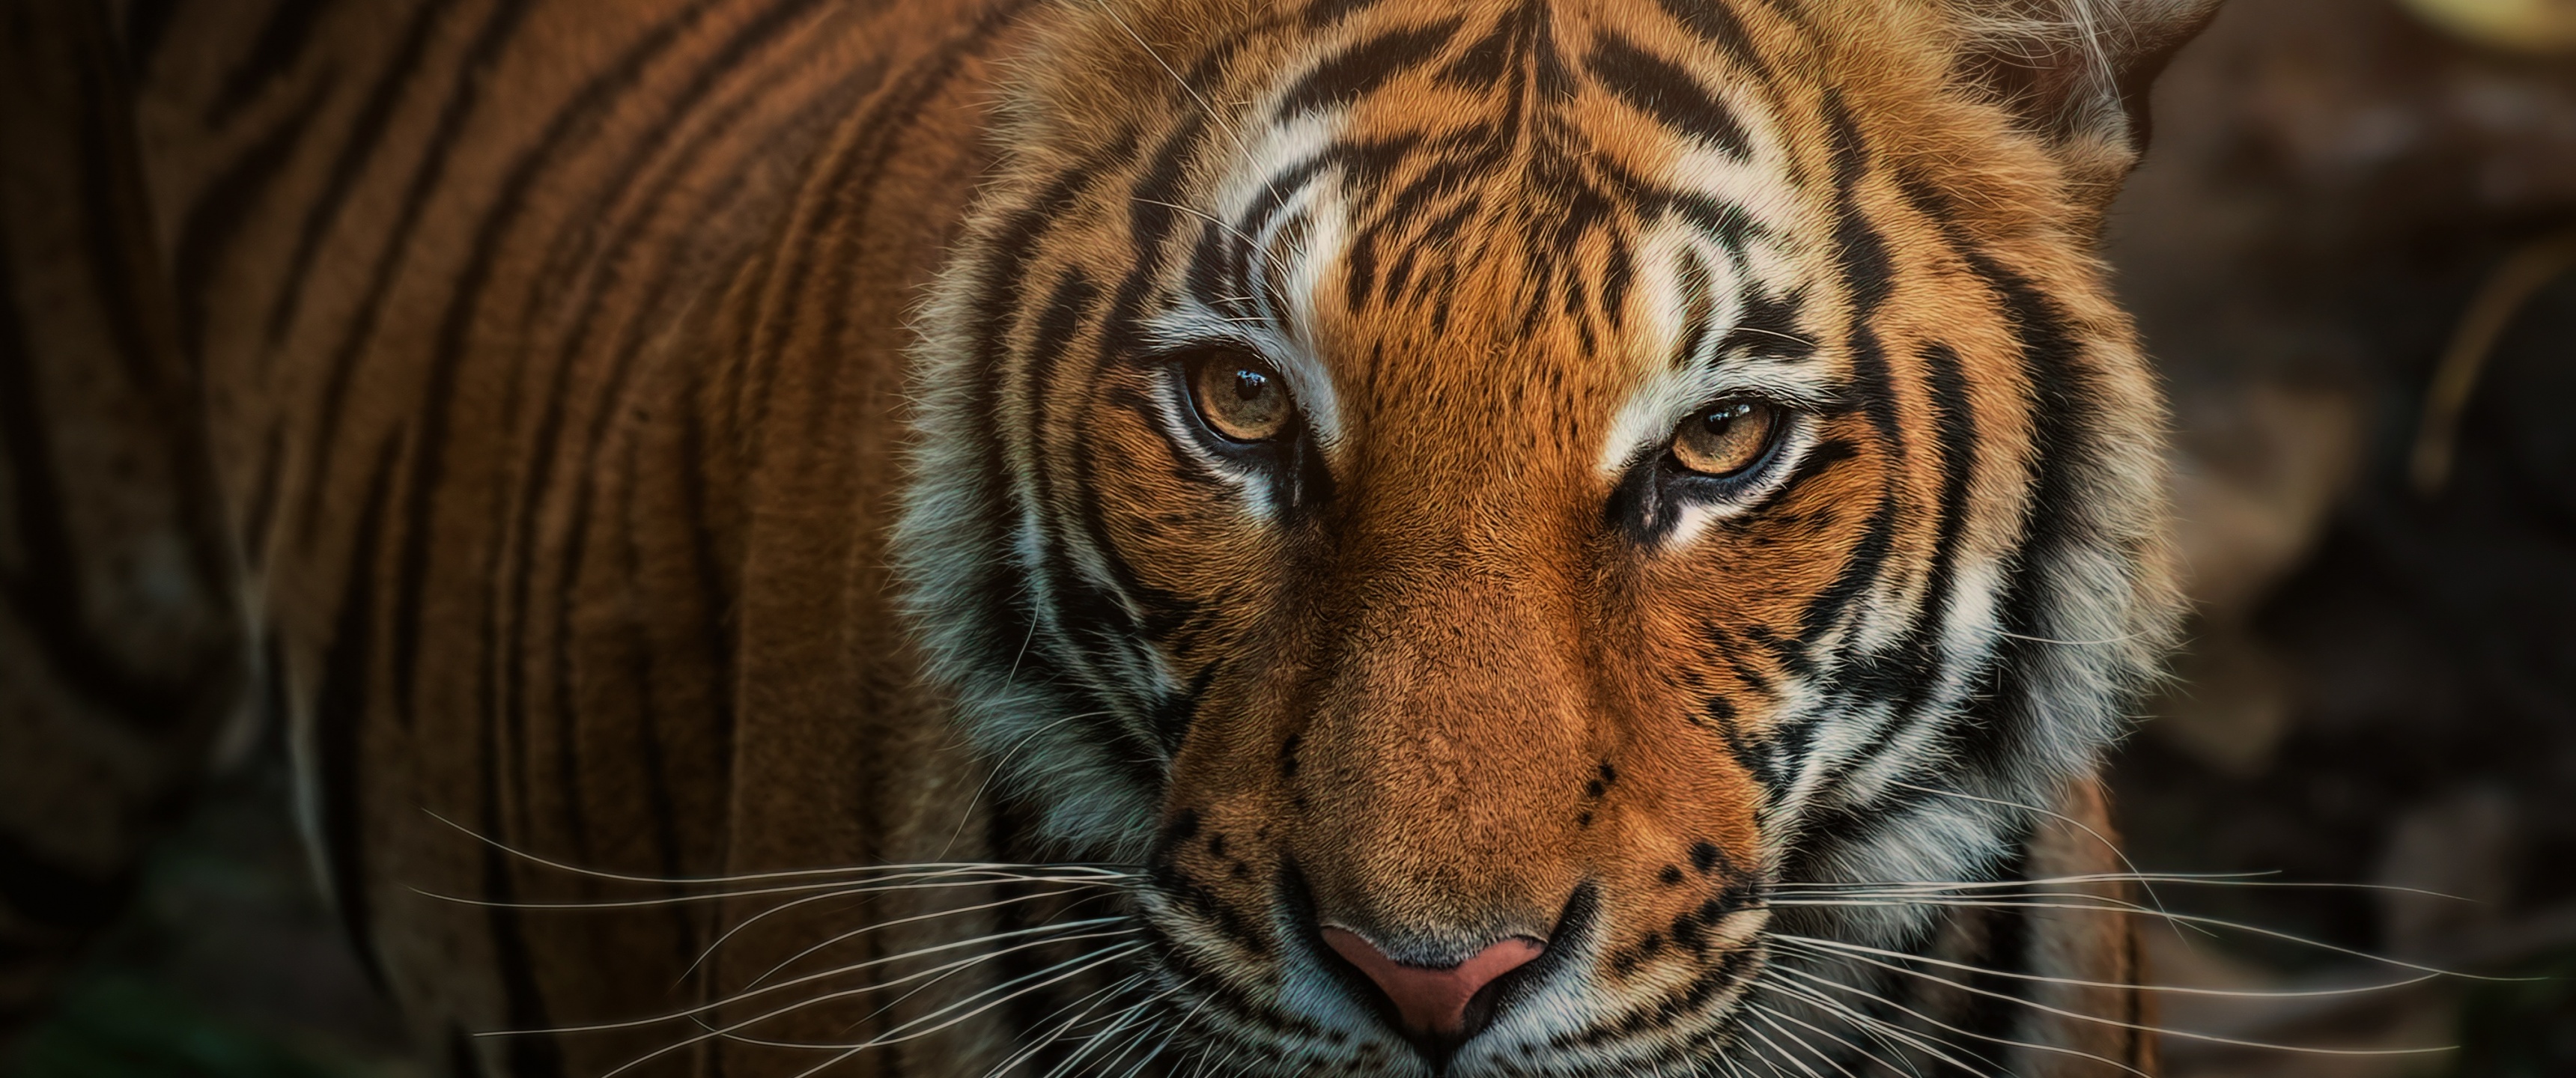 Bengal Tiger Wallpaper 4K, Closeup, Big cat, Animals, #2194